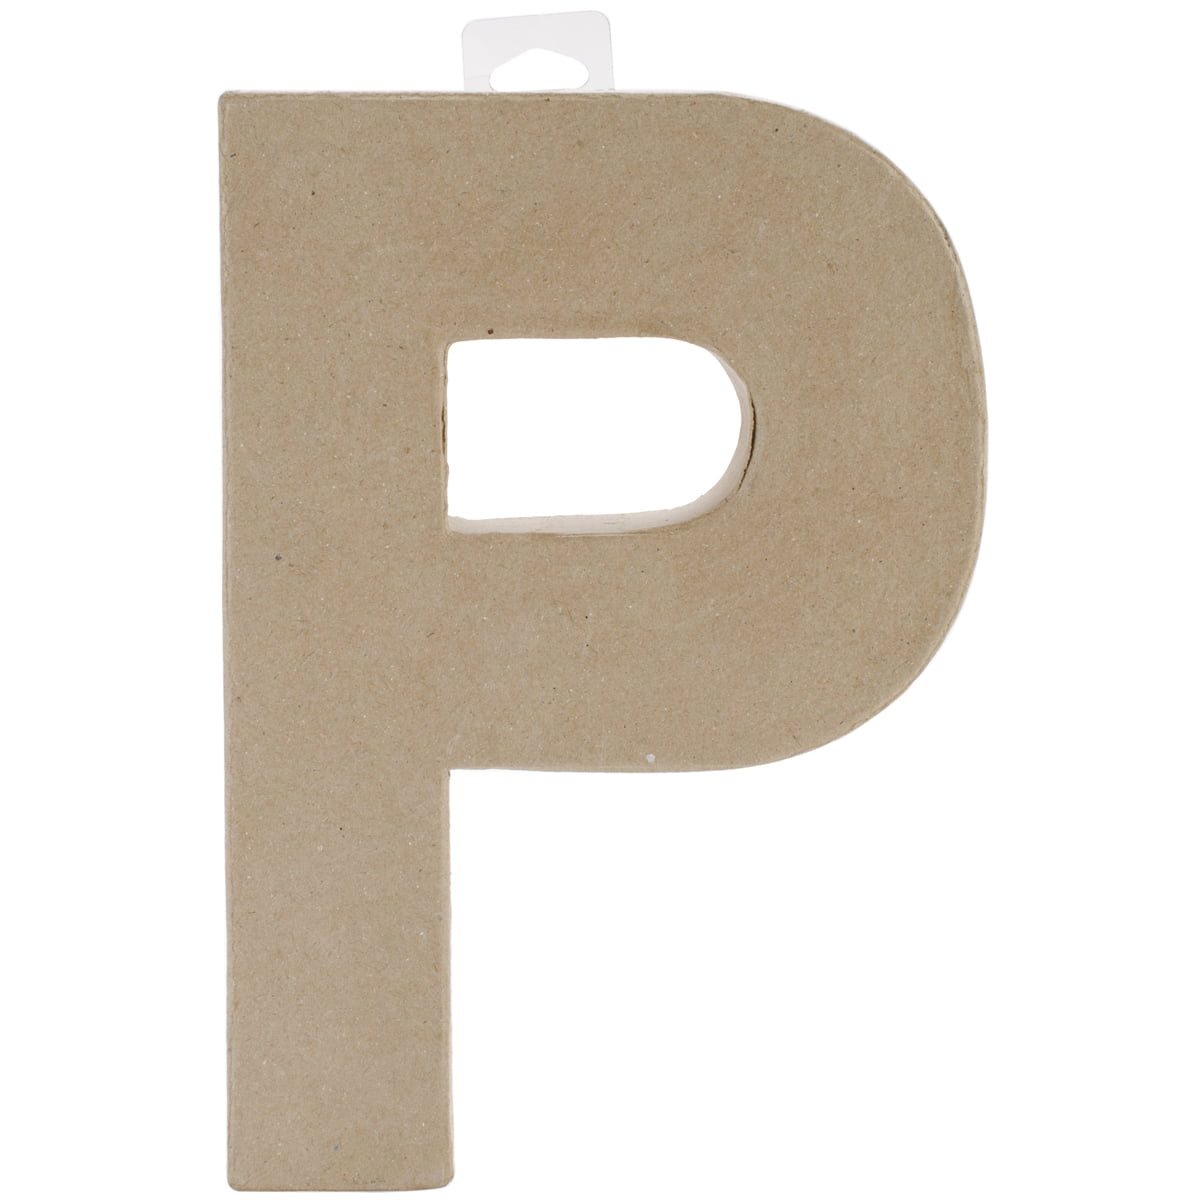 Decoupage på pappbokstäver – Decoupage on paper mache letters